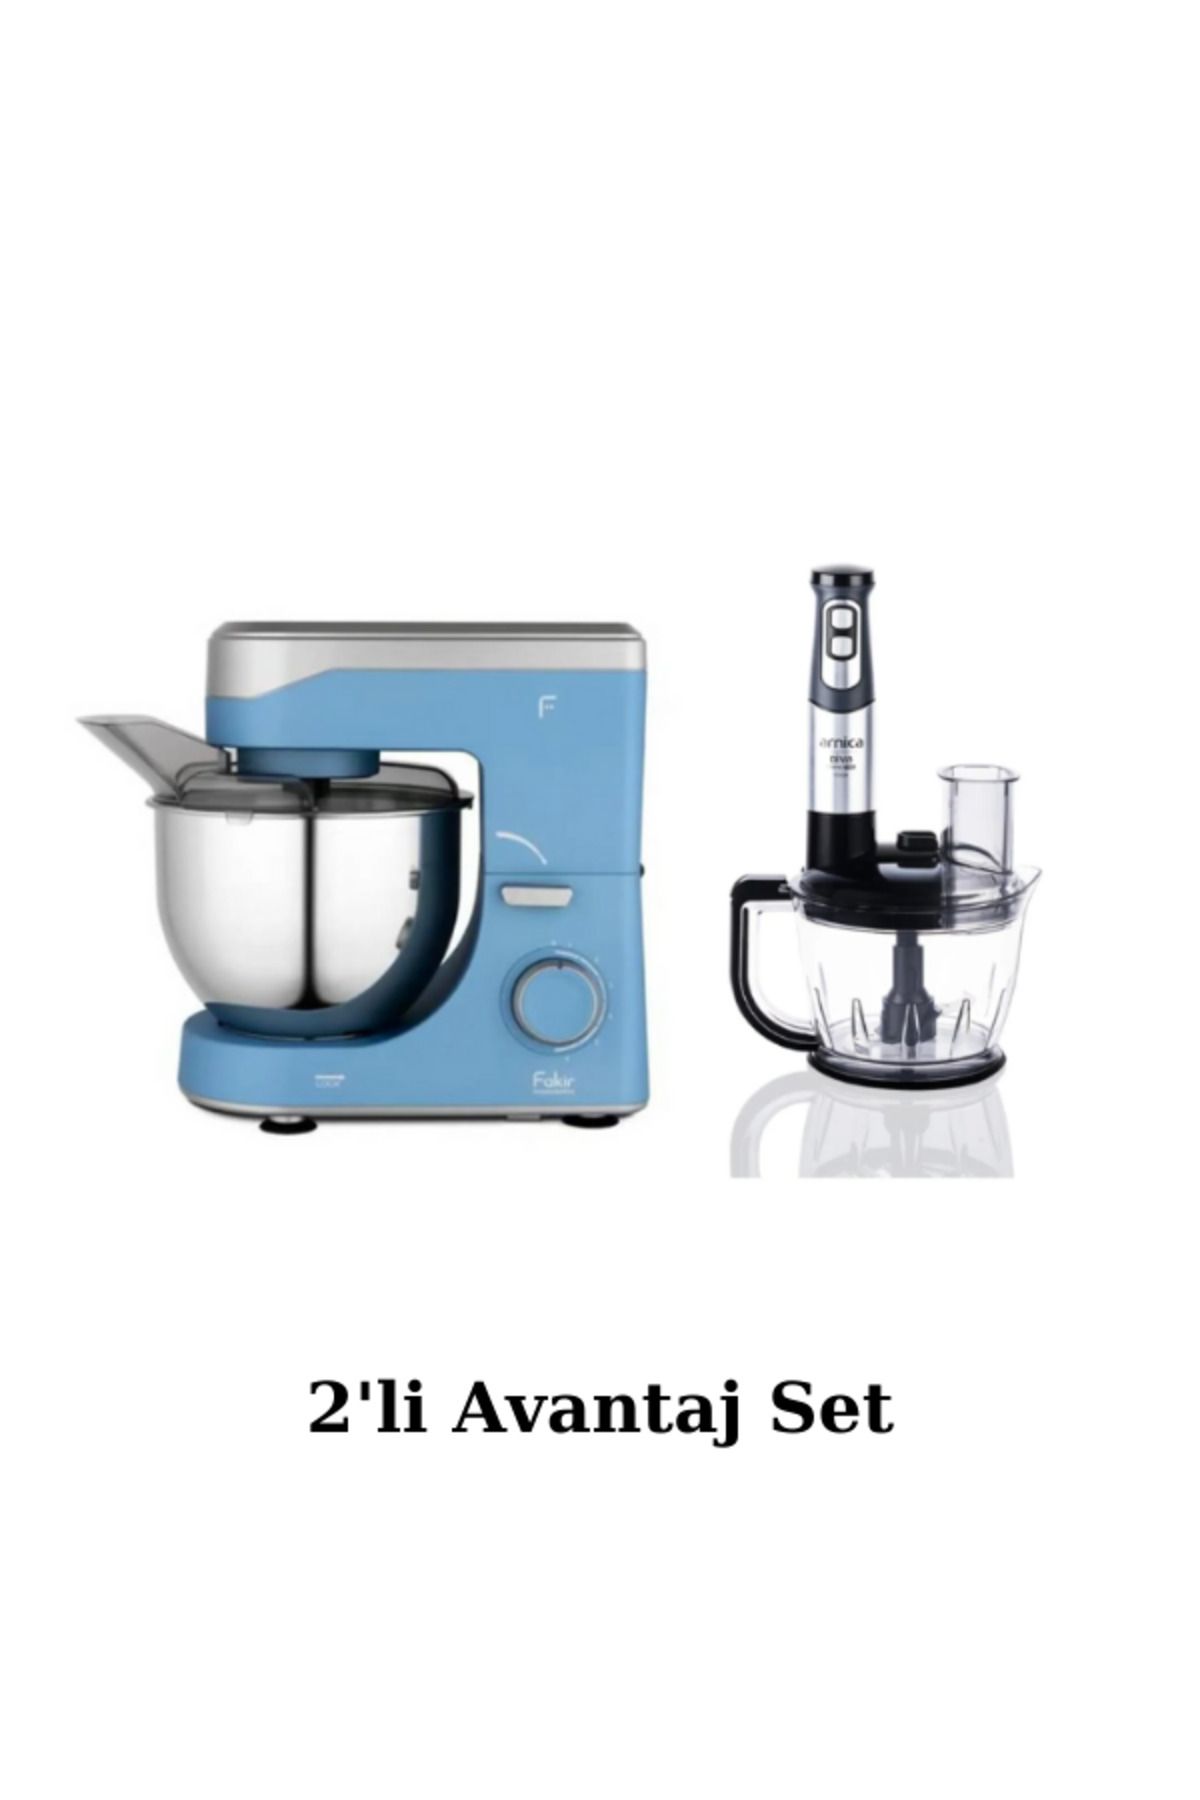 Fakir Arya Mavi 1500 W 5 lt Hamur Yoğurma Makinesi + Arnica Diva Trend Pro Silver 1200 W Blender Seti